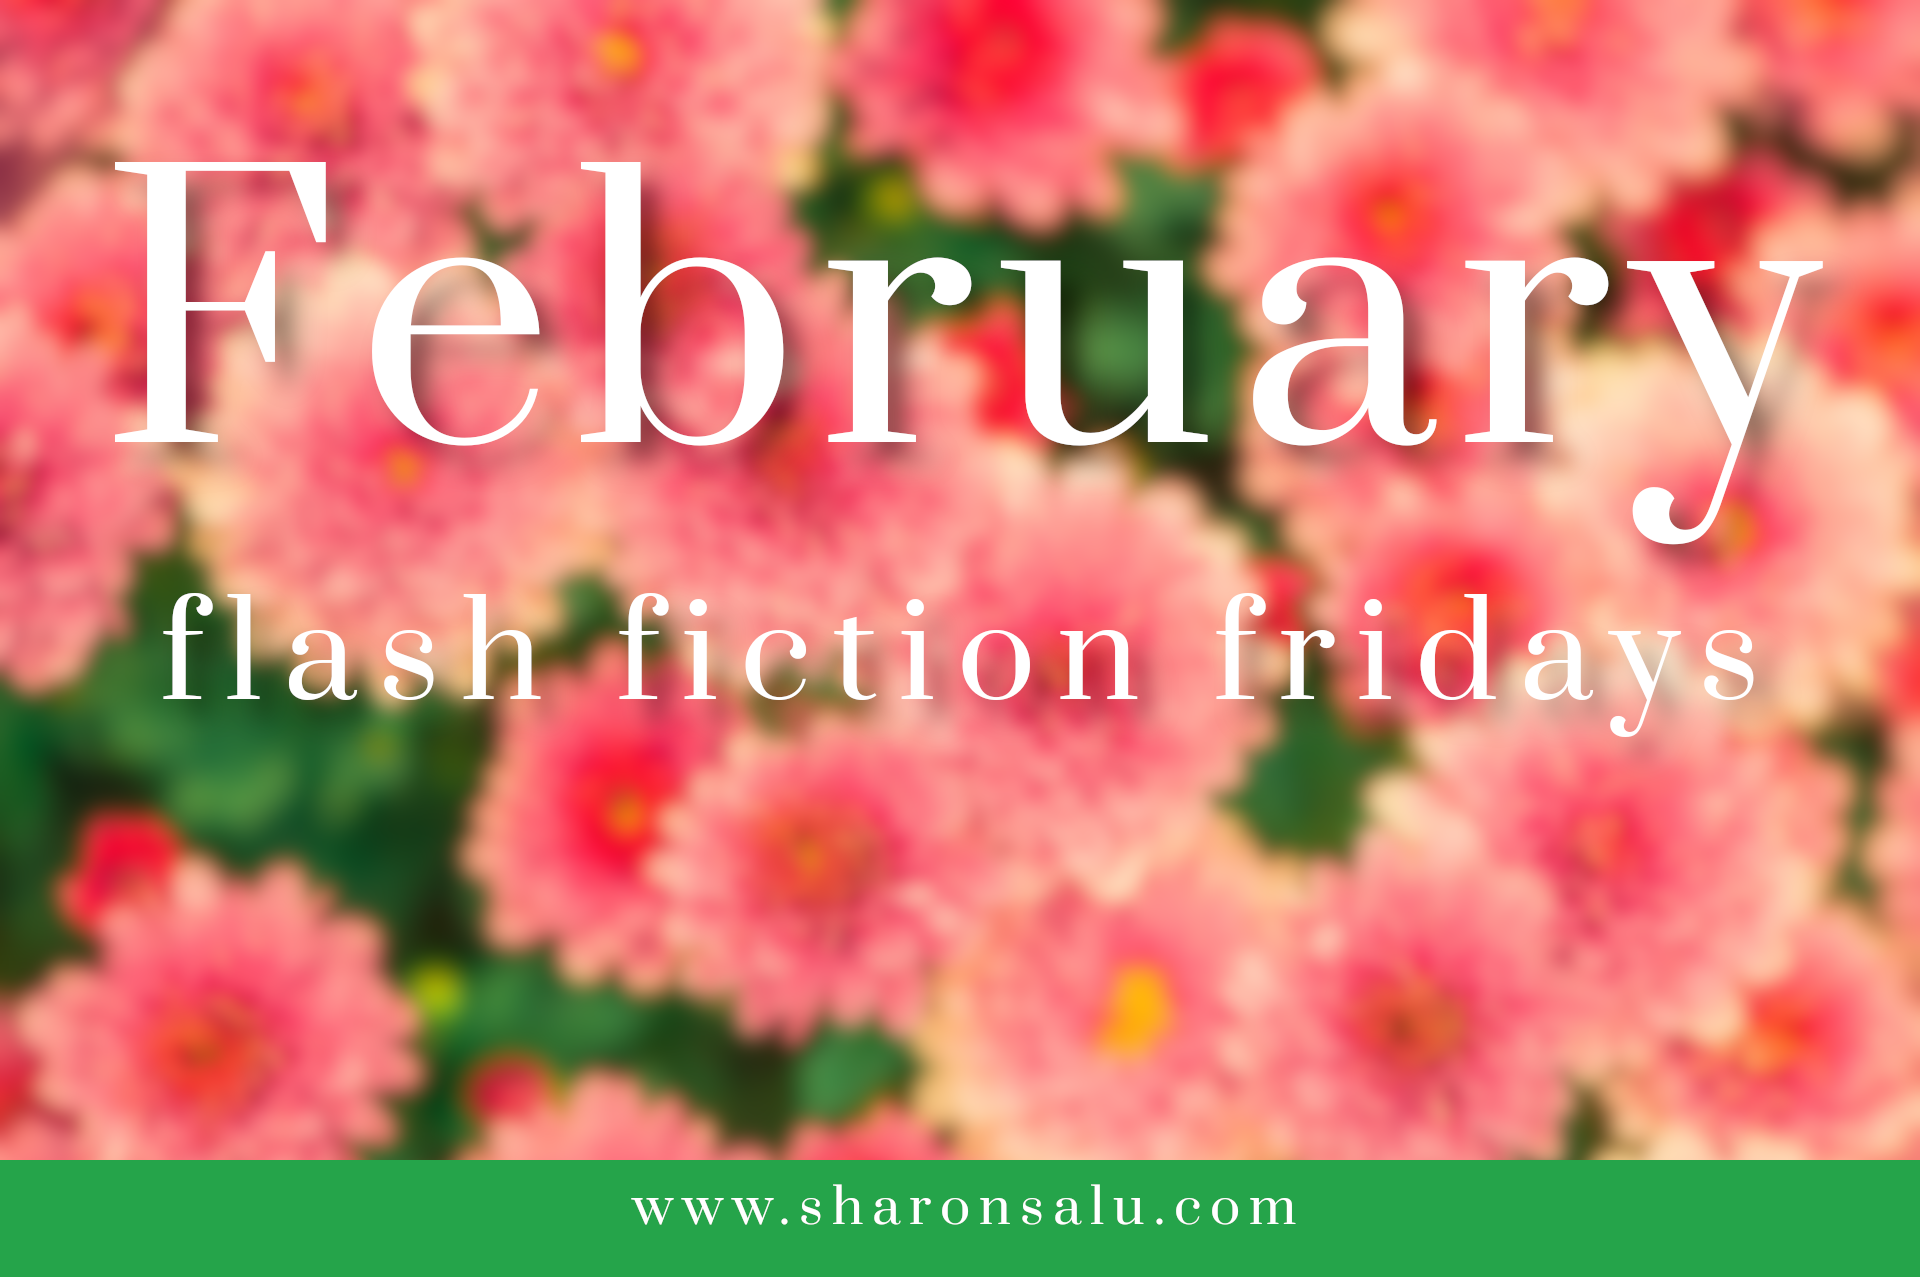 February Flash Fiction Fridays